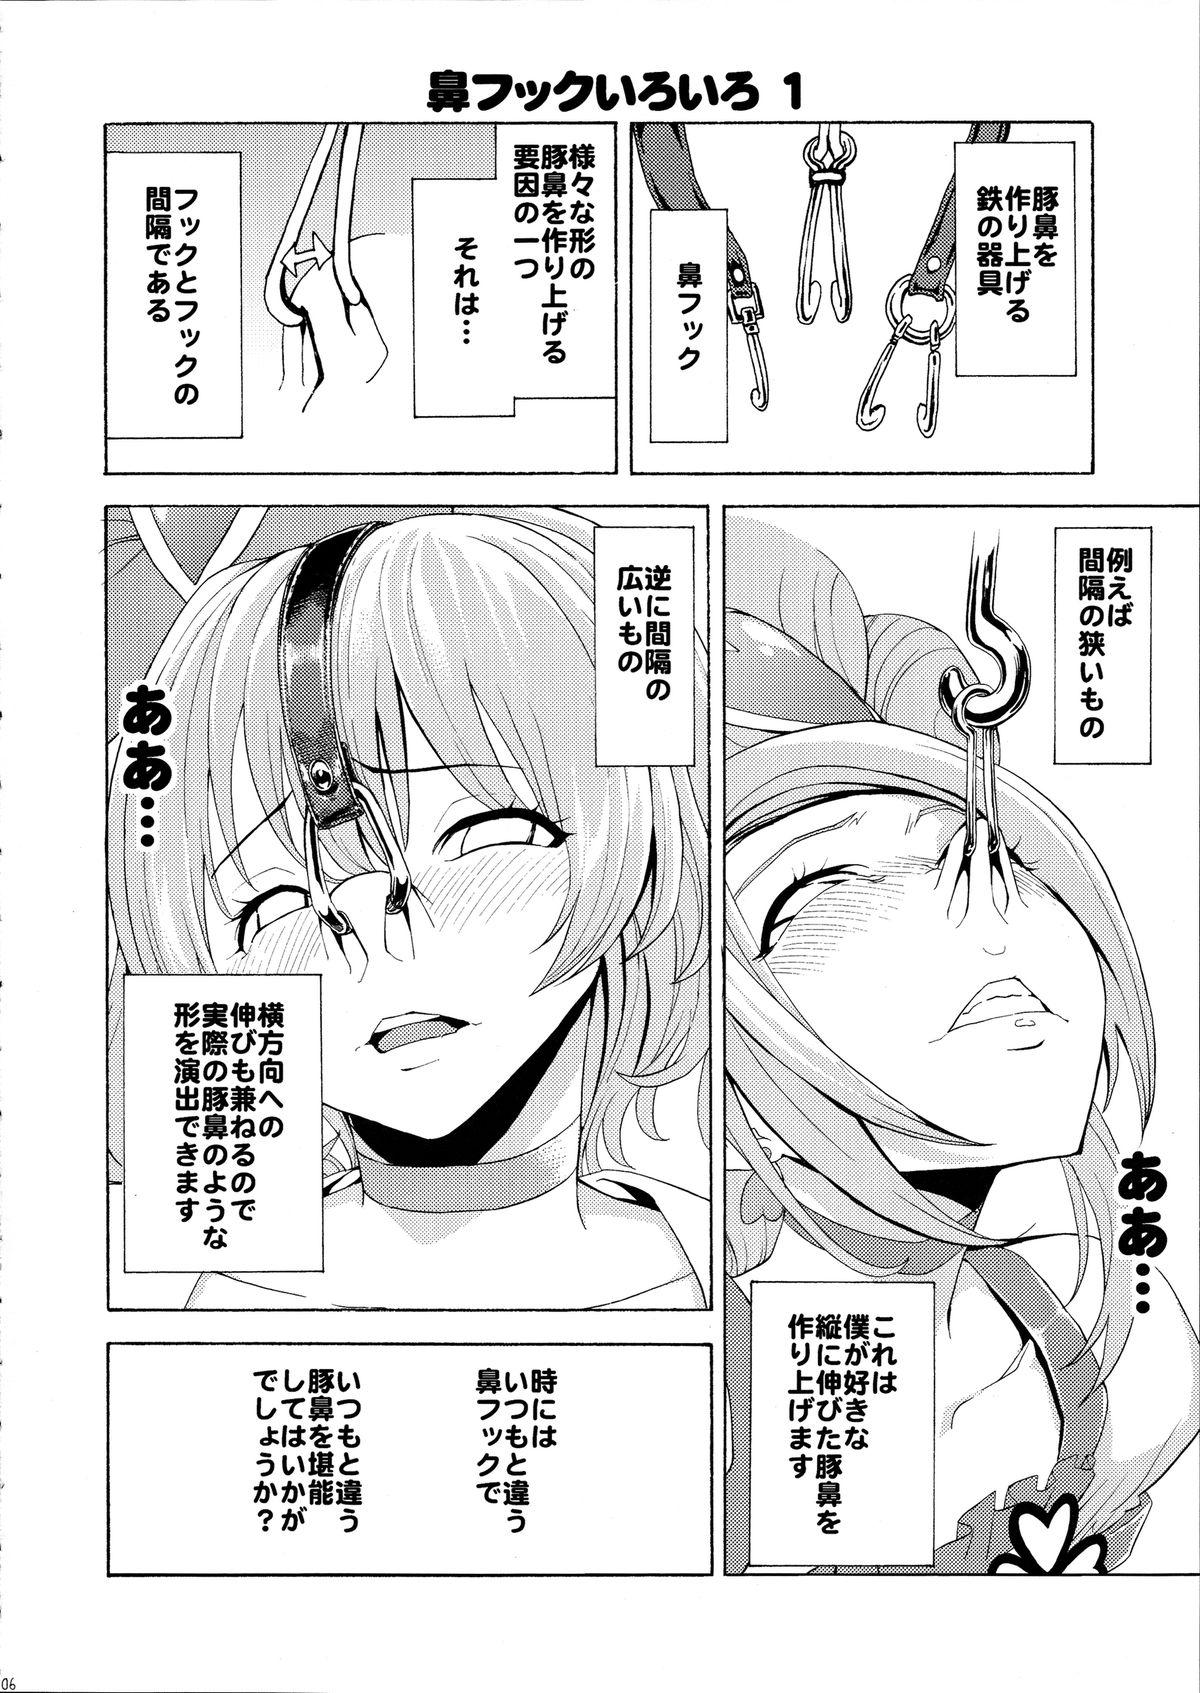 Amatuer Sex Hanazeme no hon sono 2 - Vocaloid Love plus Office Sex - Page 6